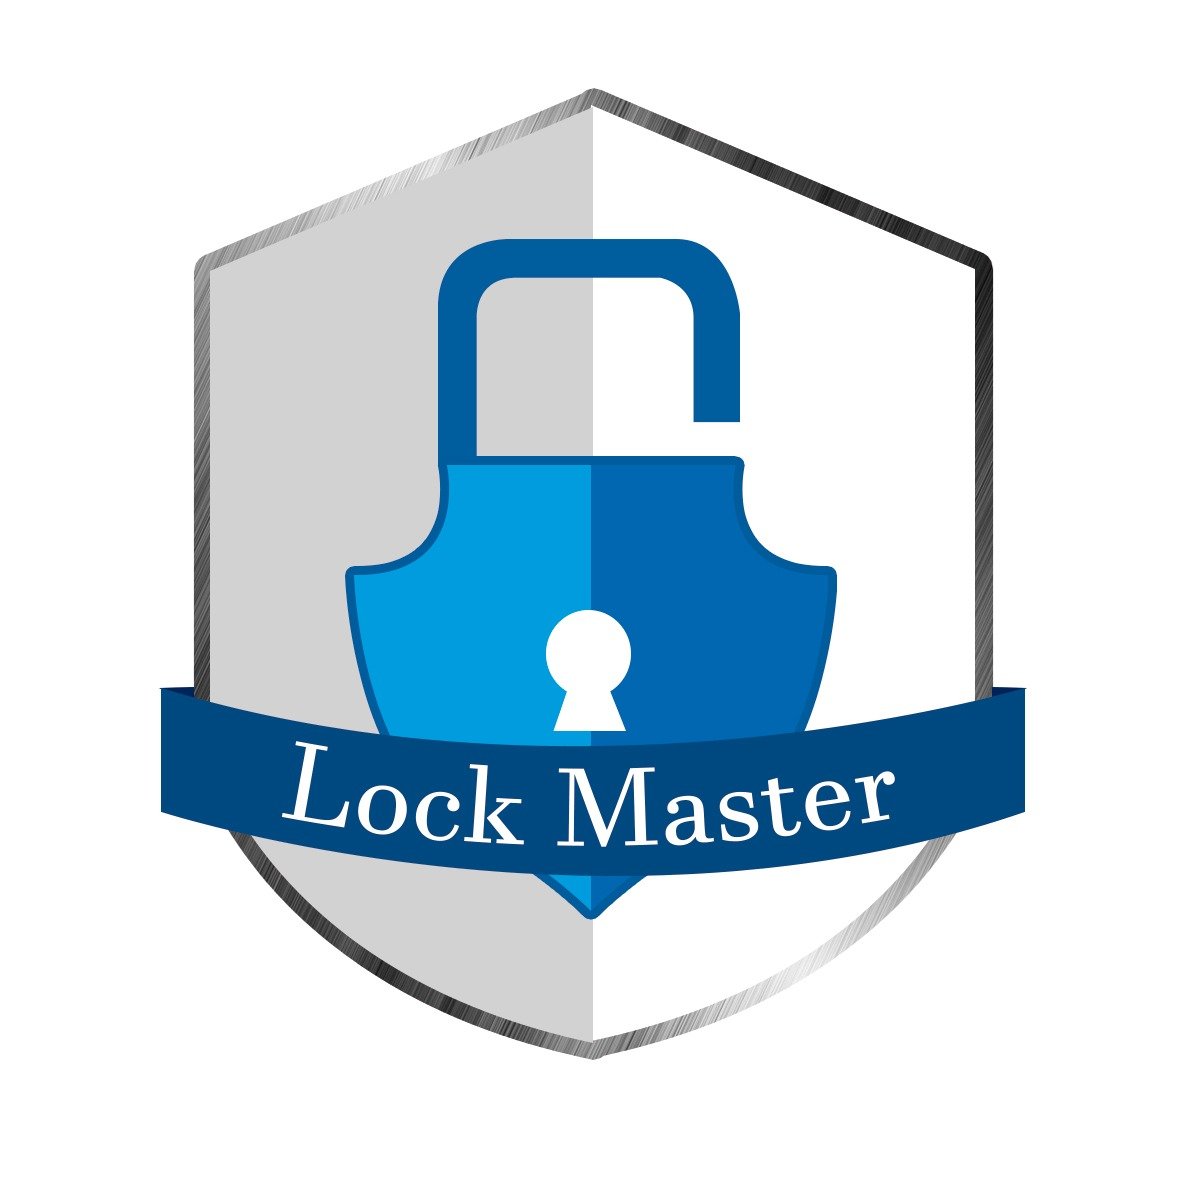 LockMaster® es una empresa 24 horas que ofrece servicios de cerrajería de urgencia tales como apertura de puertas, cambio de cerraduras y dar mayor seguridad.